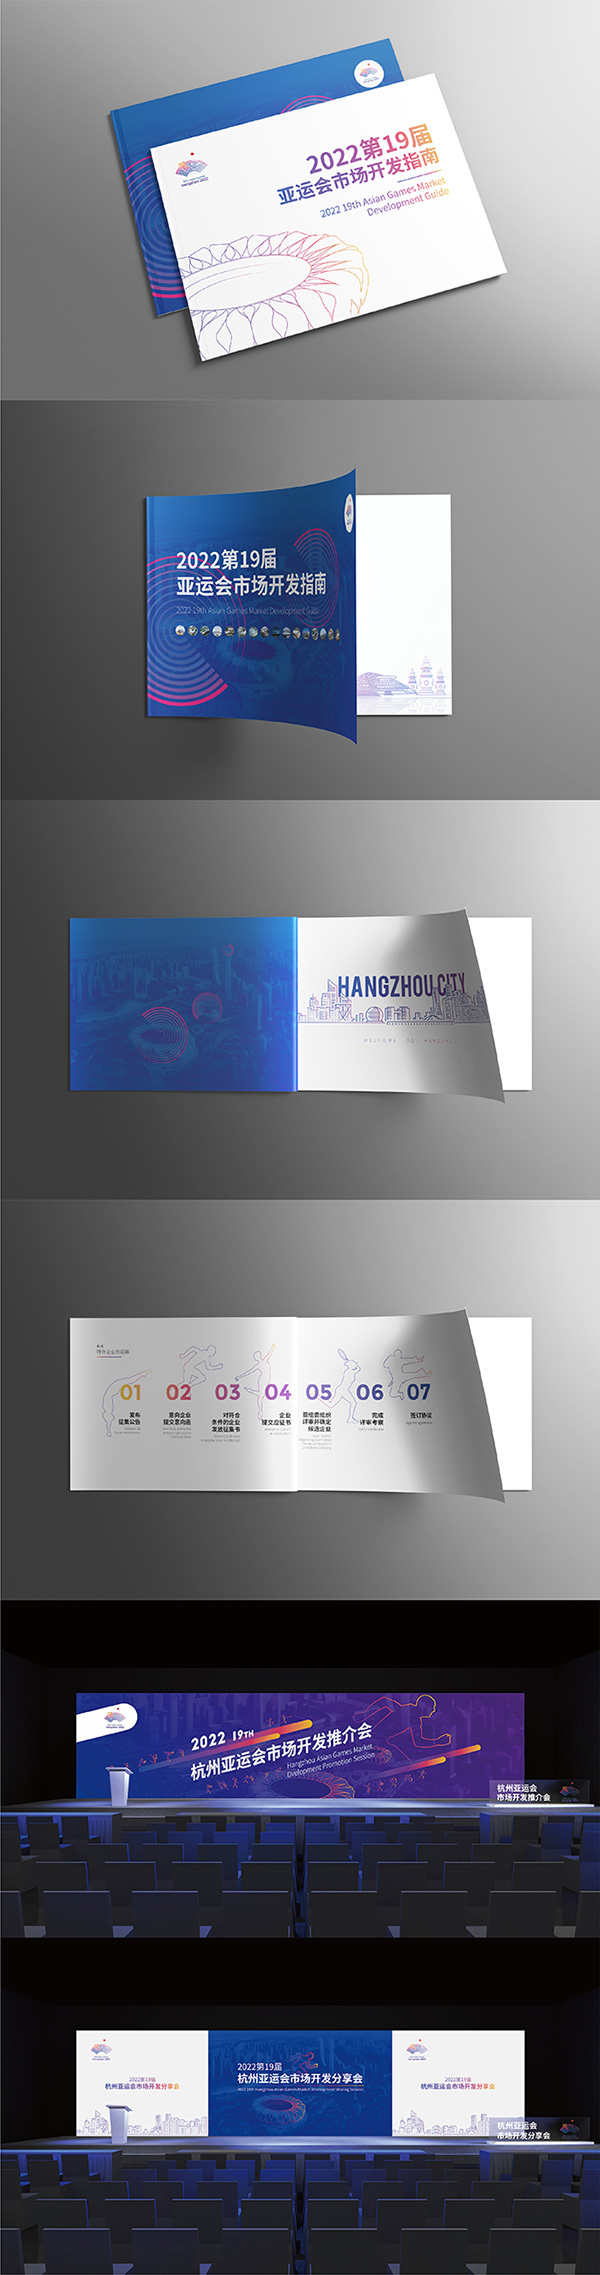 Hangzhou 2020 Asia Games Brochure